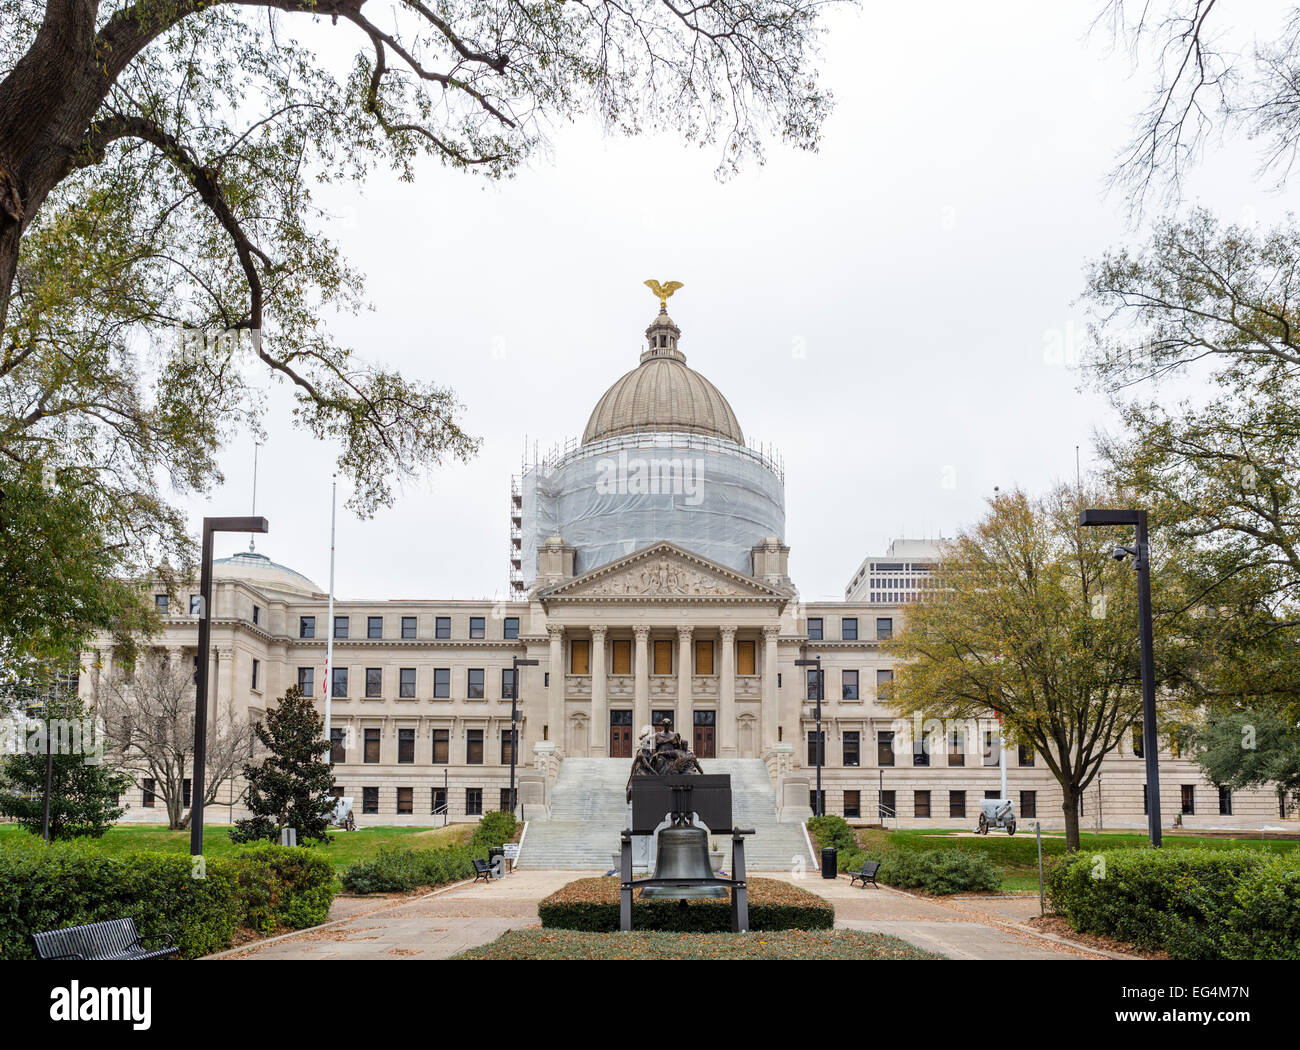 La Mississippi State Capitol, l'objet d'une importante restauration à échéance fin 2016, Jackson, Mississippi, USA Banque D'Images